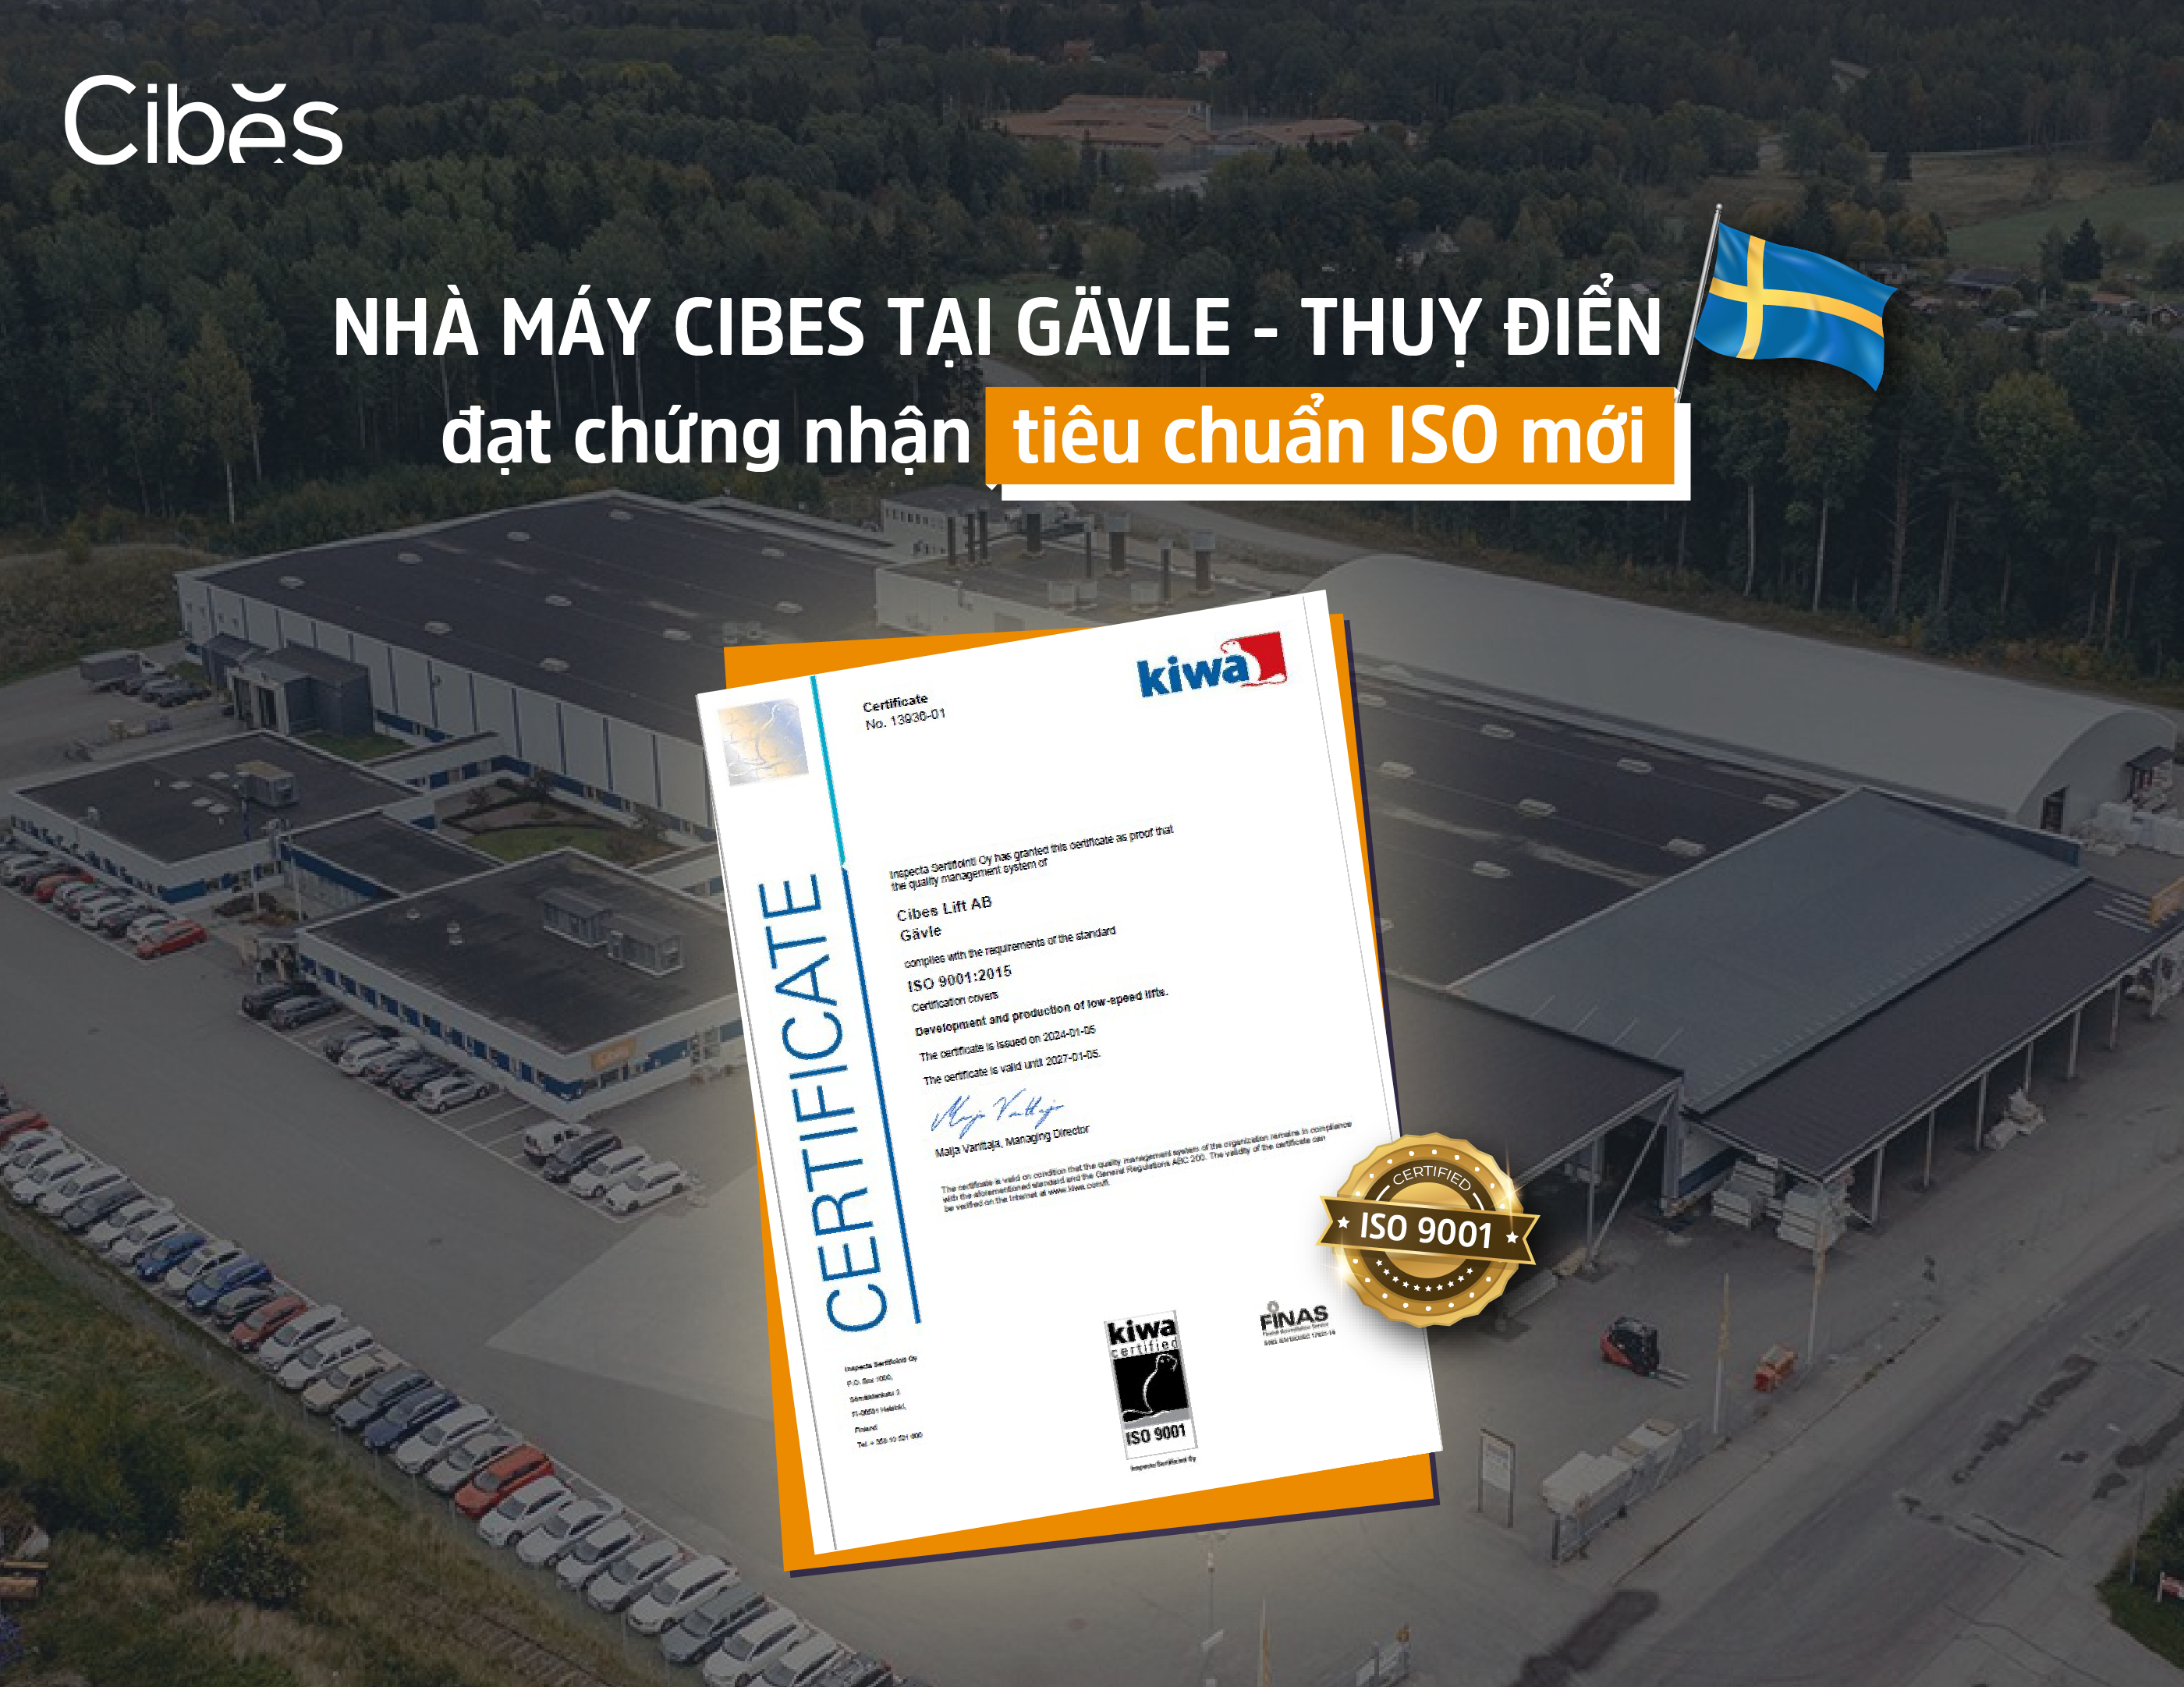 Nhà máy của Cibes tại Gävle - Thuỵ Điển đã chính thức đạt được chứng nhận ISO 9001:2015 mới